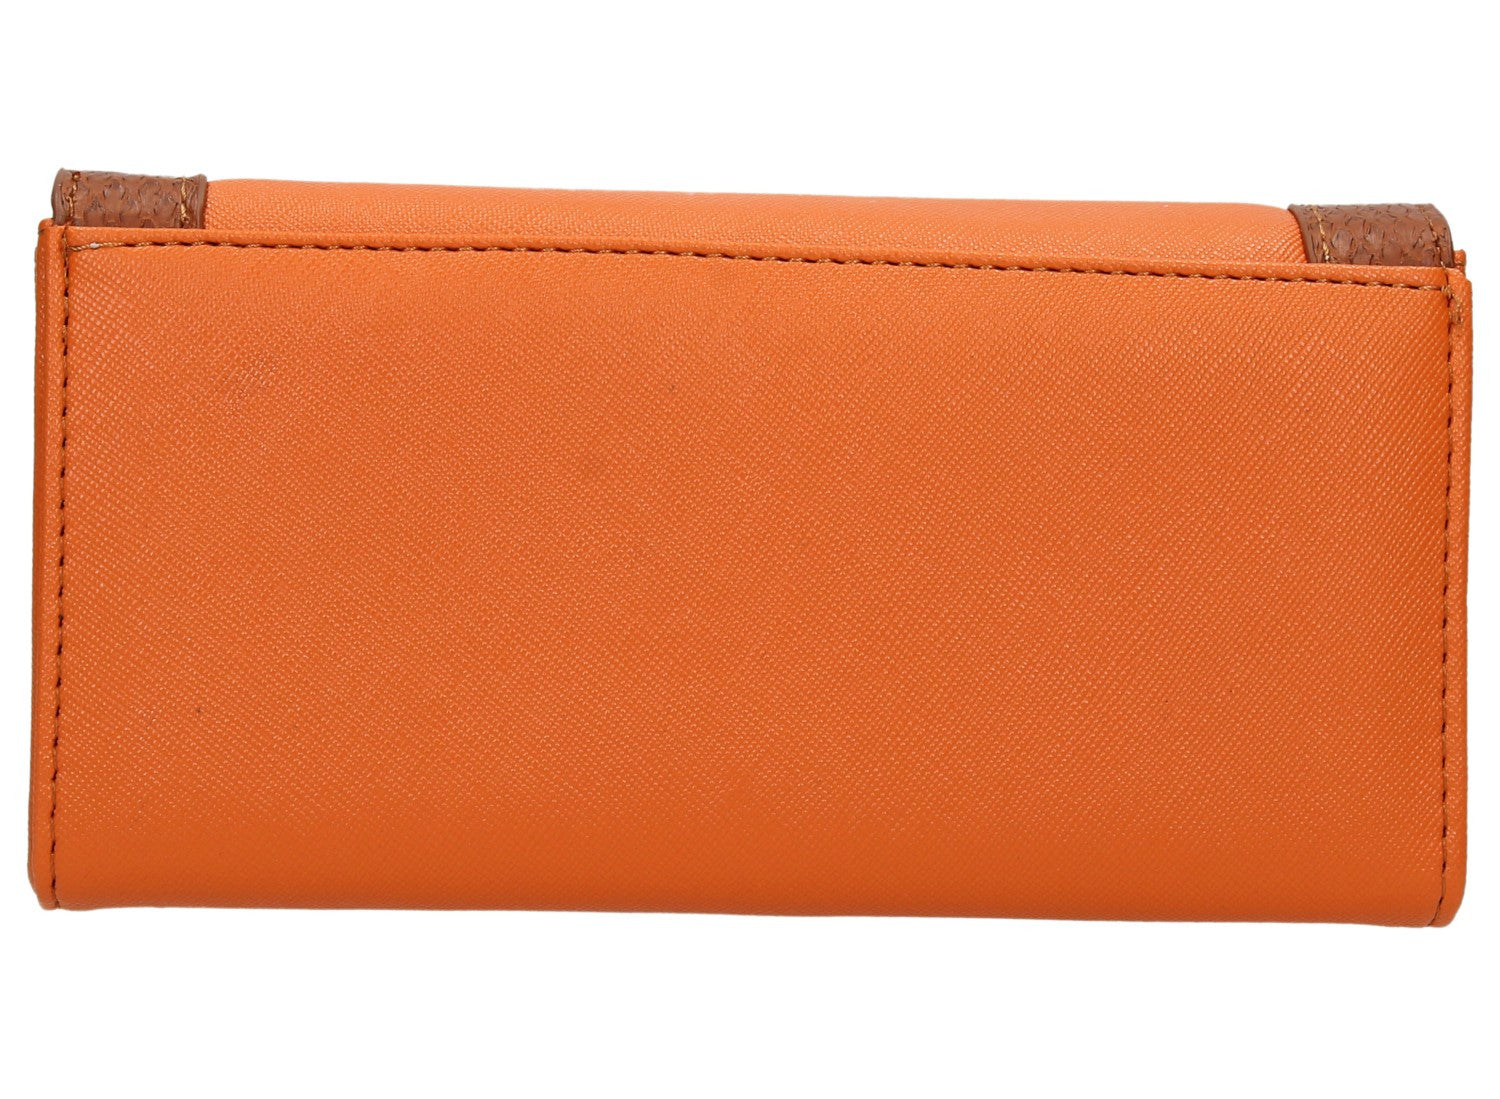 Swanky Swank Ella Elegant Leather Purse OrangeCheap Cute School Wallets Purses Bags Animal